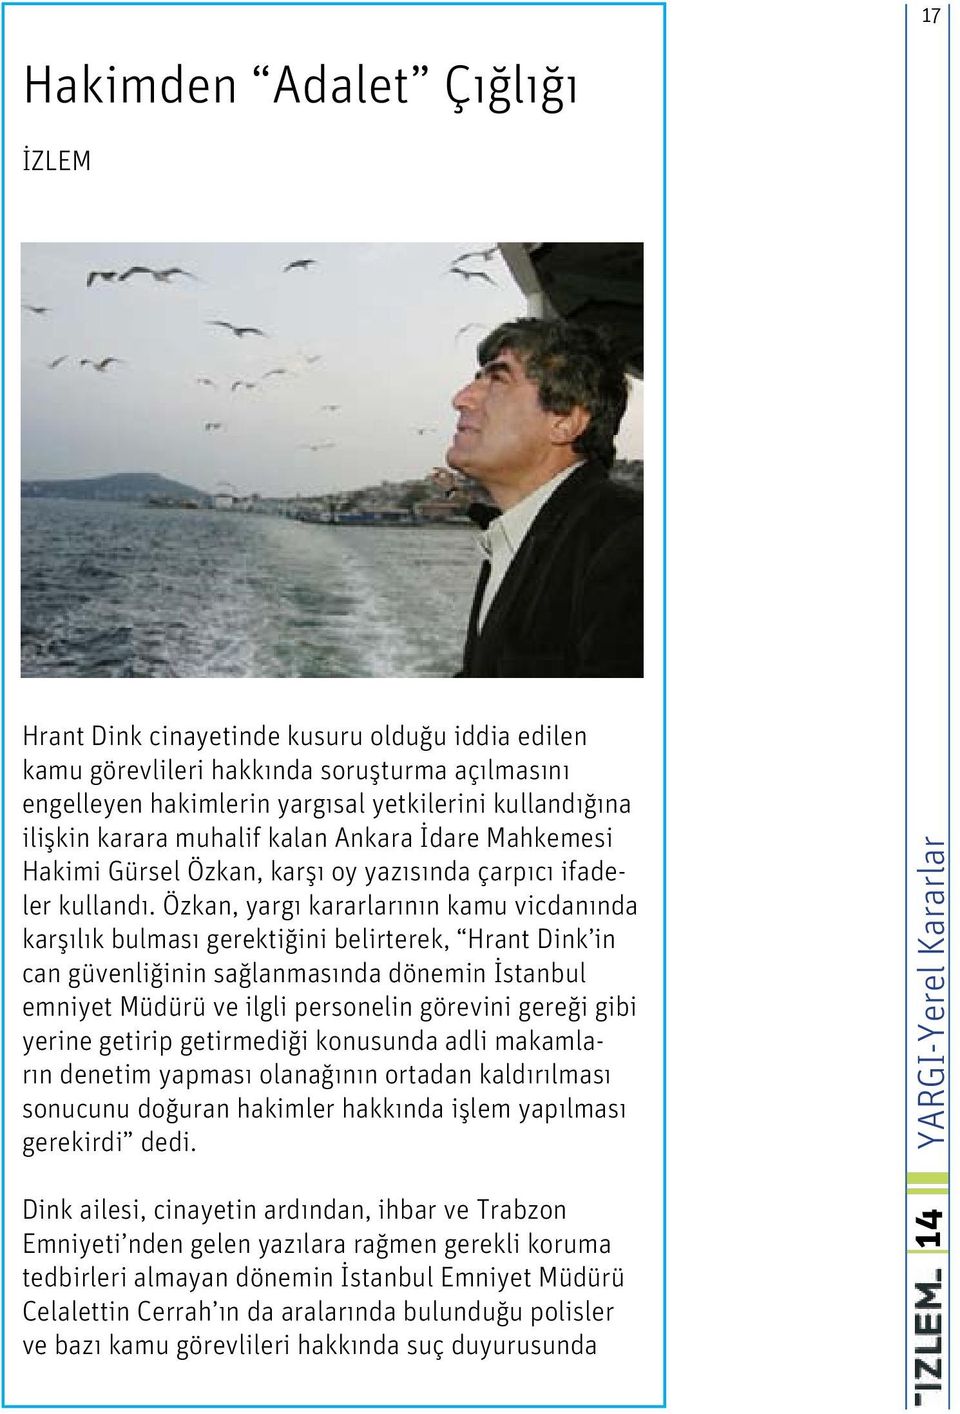 Özkan, yargı kararlarının kamu vicdanında karşılık bulması gerektiğini belirterek, Hrant Dink in can güvenliğinin sağlanmasında dönemin İstanbul emniyet Müdürü ve ilgli personelin görevini gereği